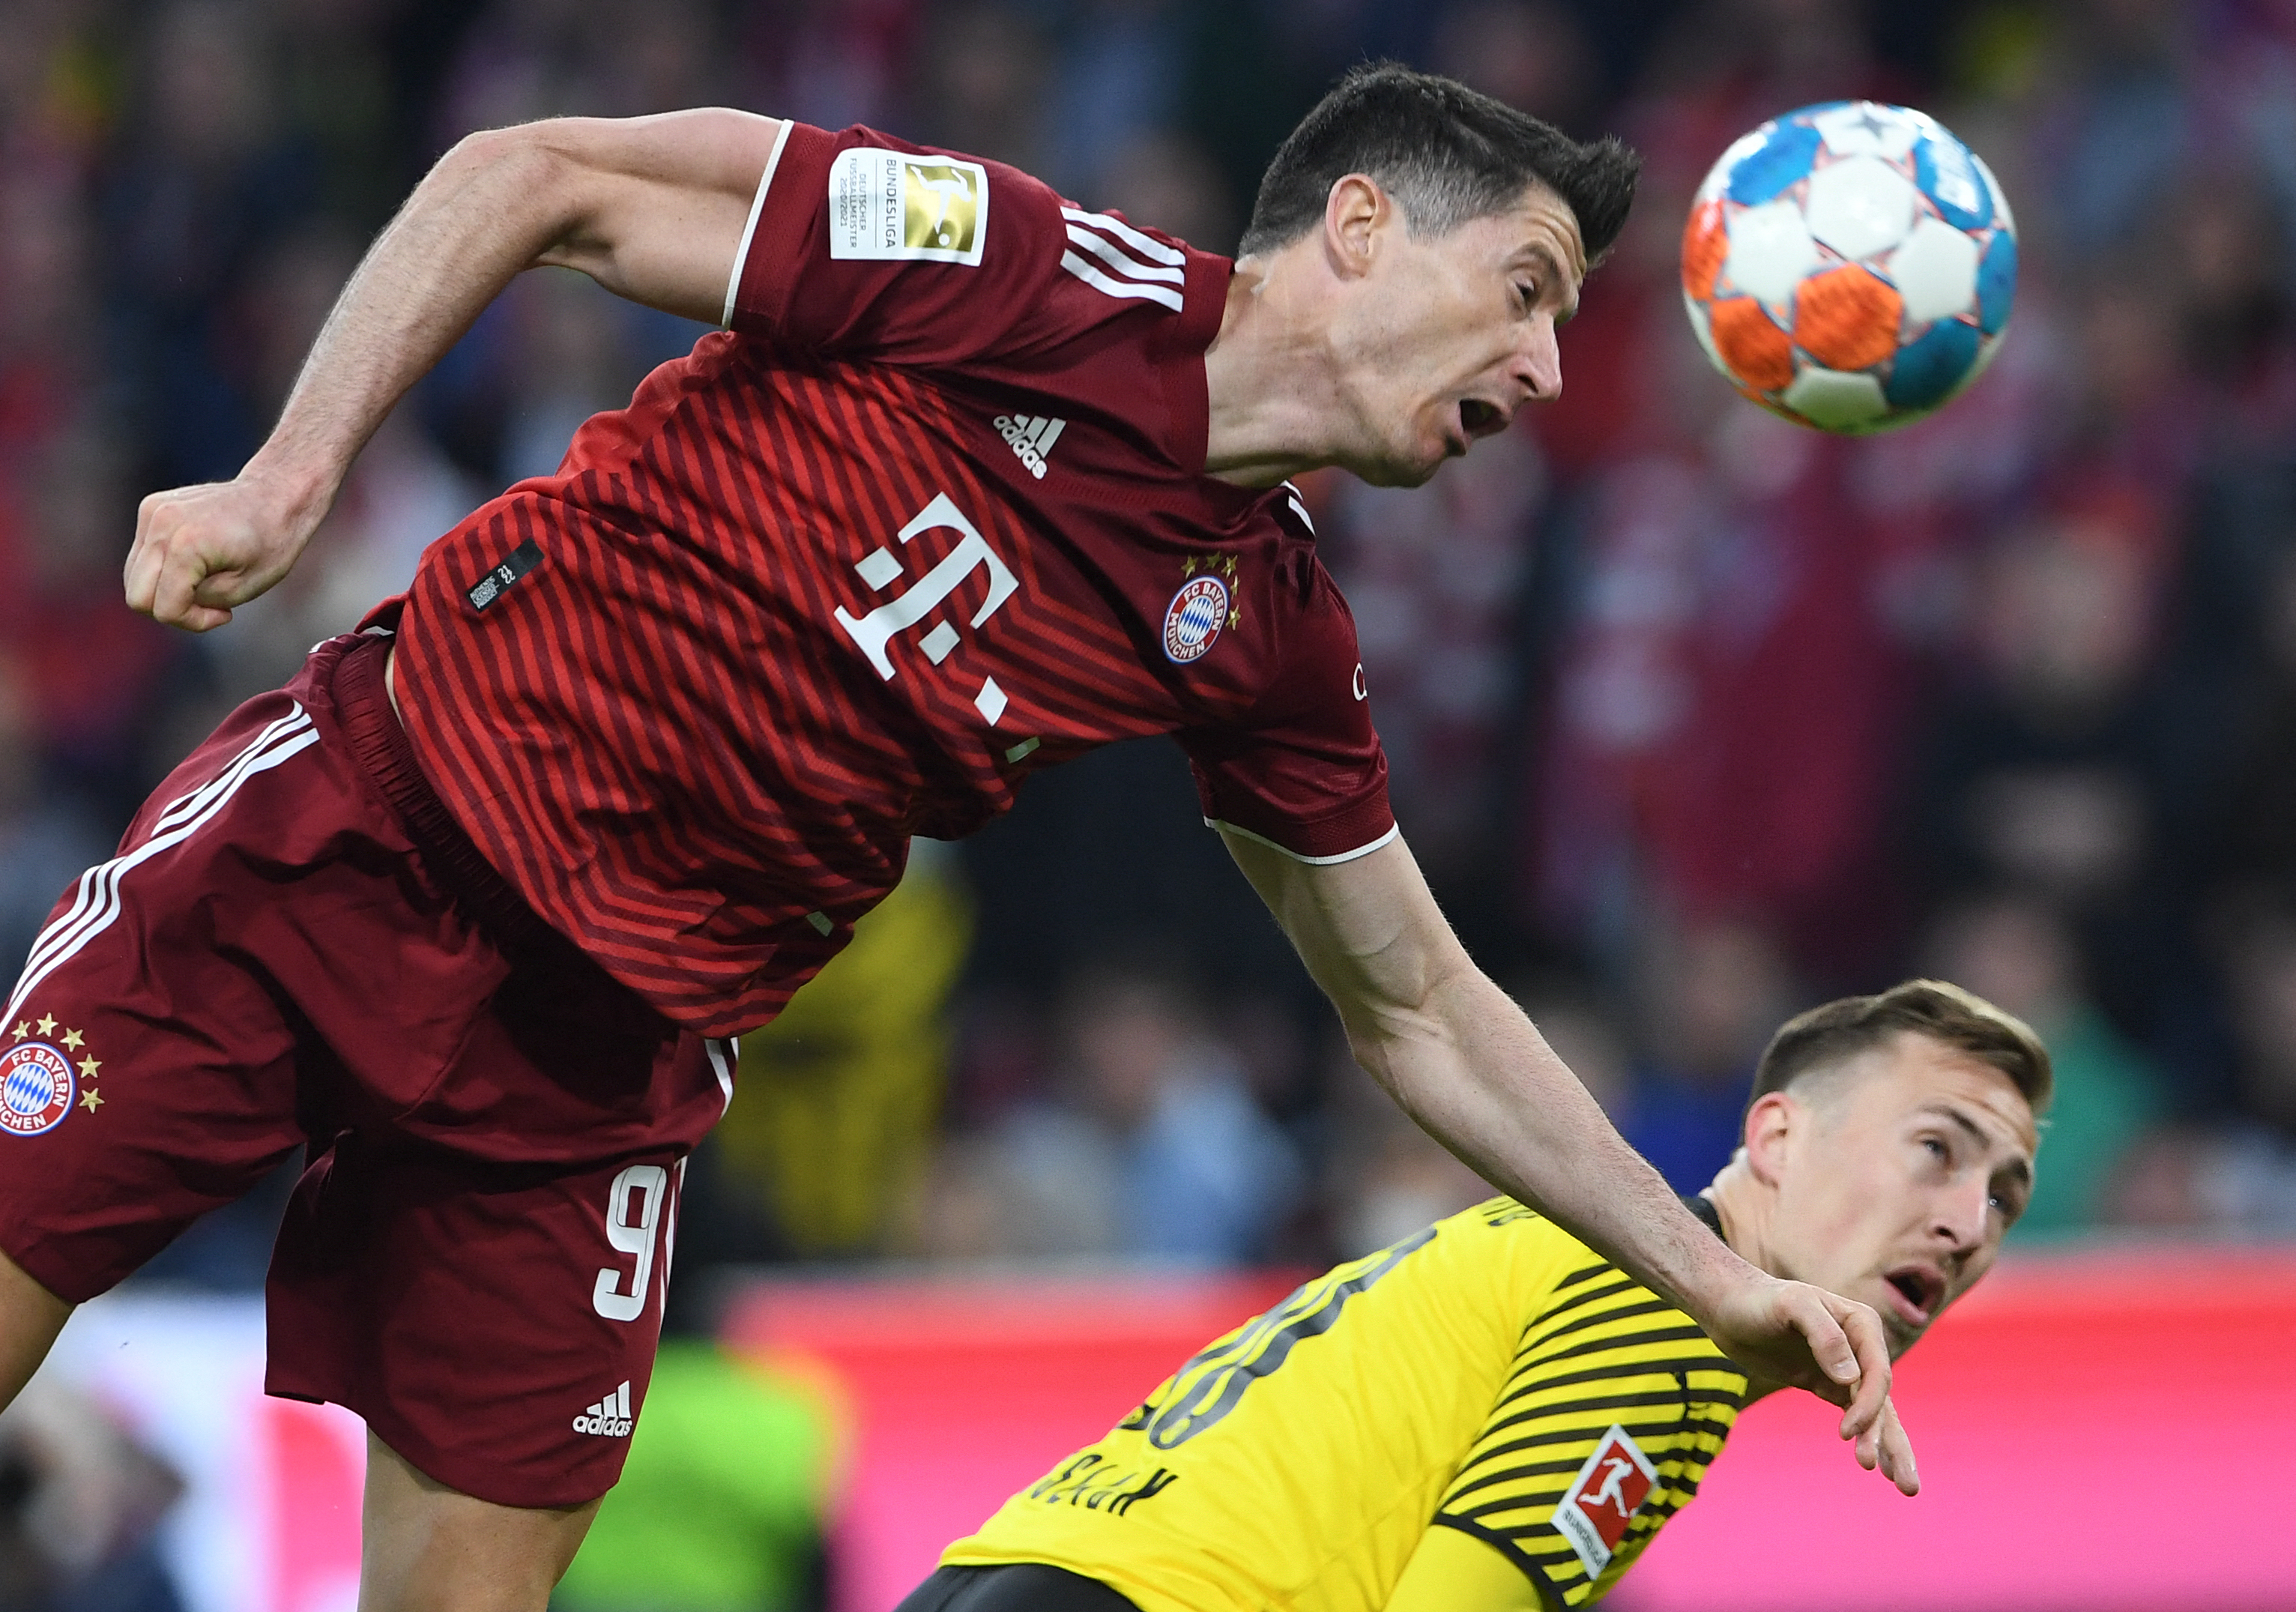 El Bayern de Múnich se mantiene firme sobre el caso Lewandowski